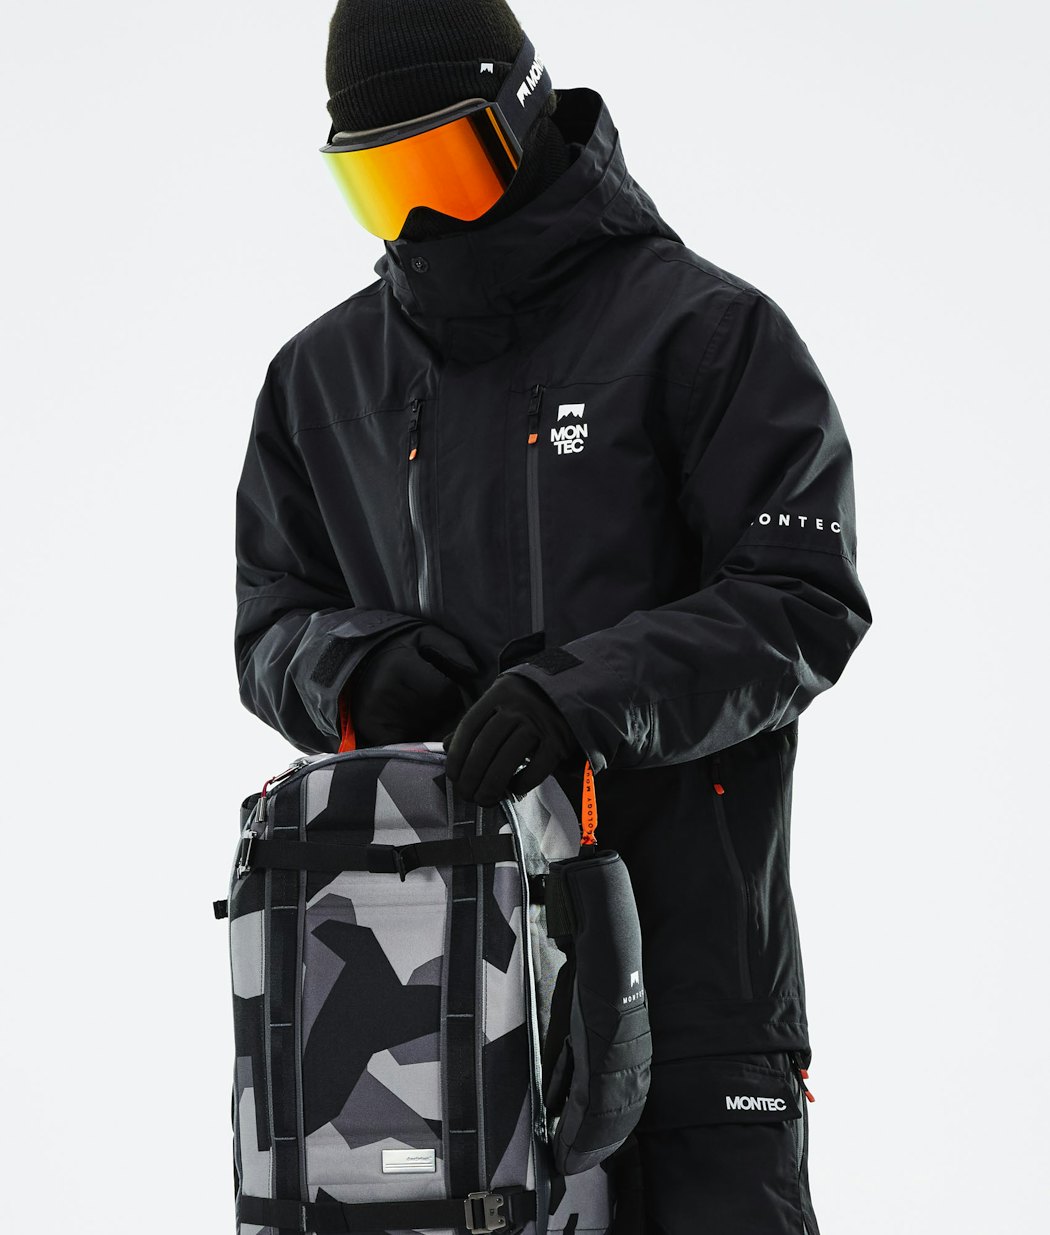 Fawk 2021 スキージャケット メンズ Black